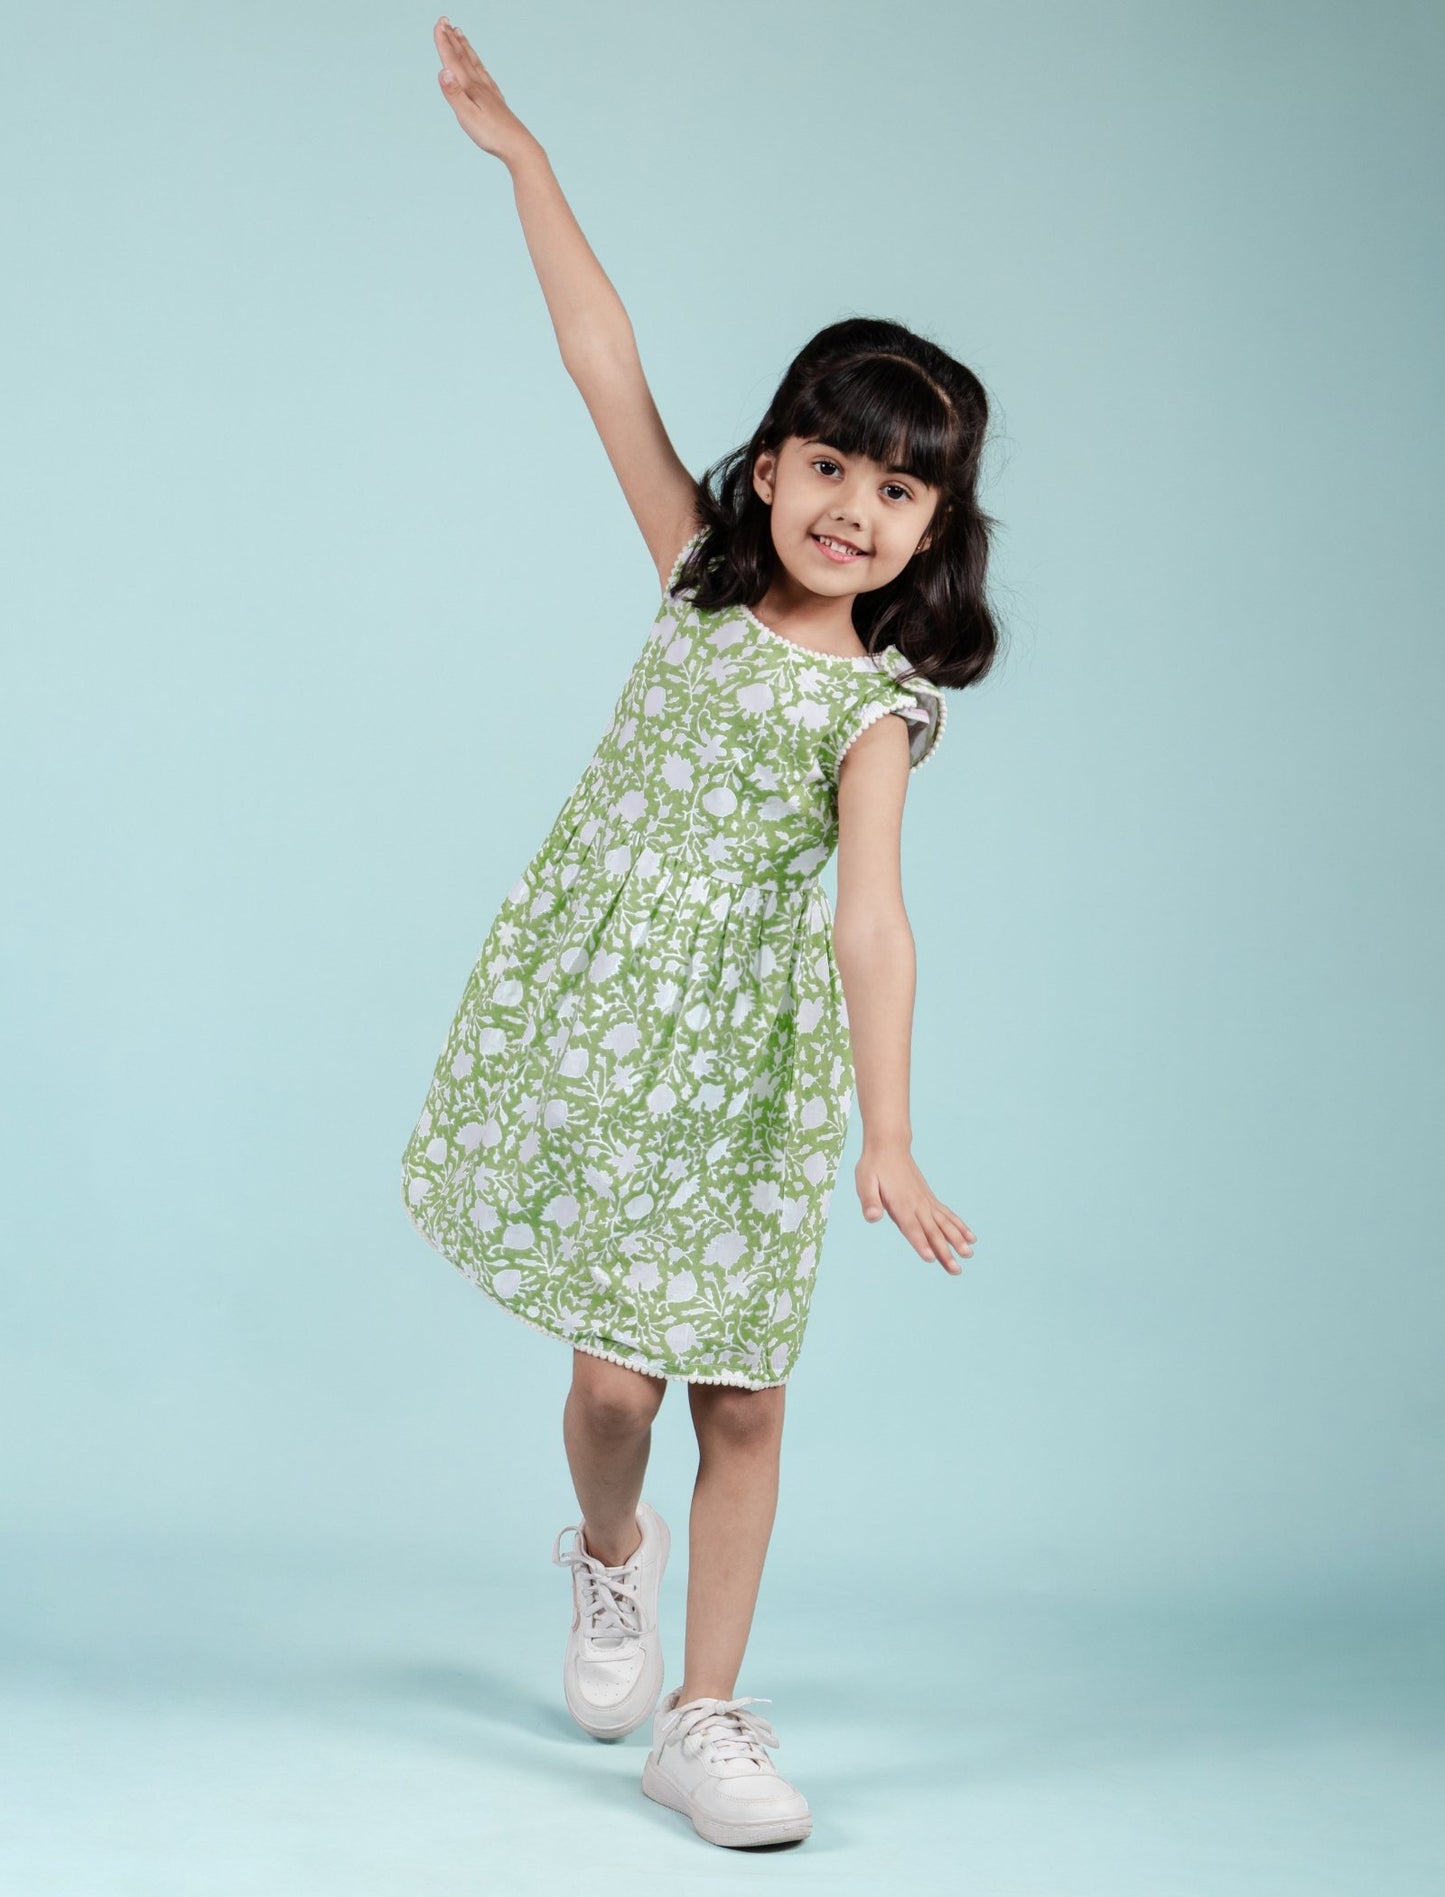 Girls Kids Block Printed Pure Cotton Sleeveless Summer Dress (Green)